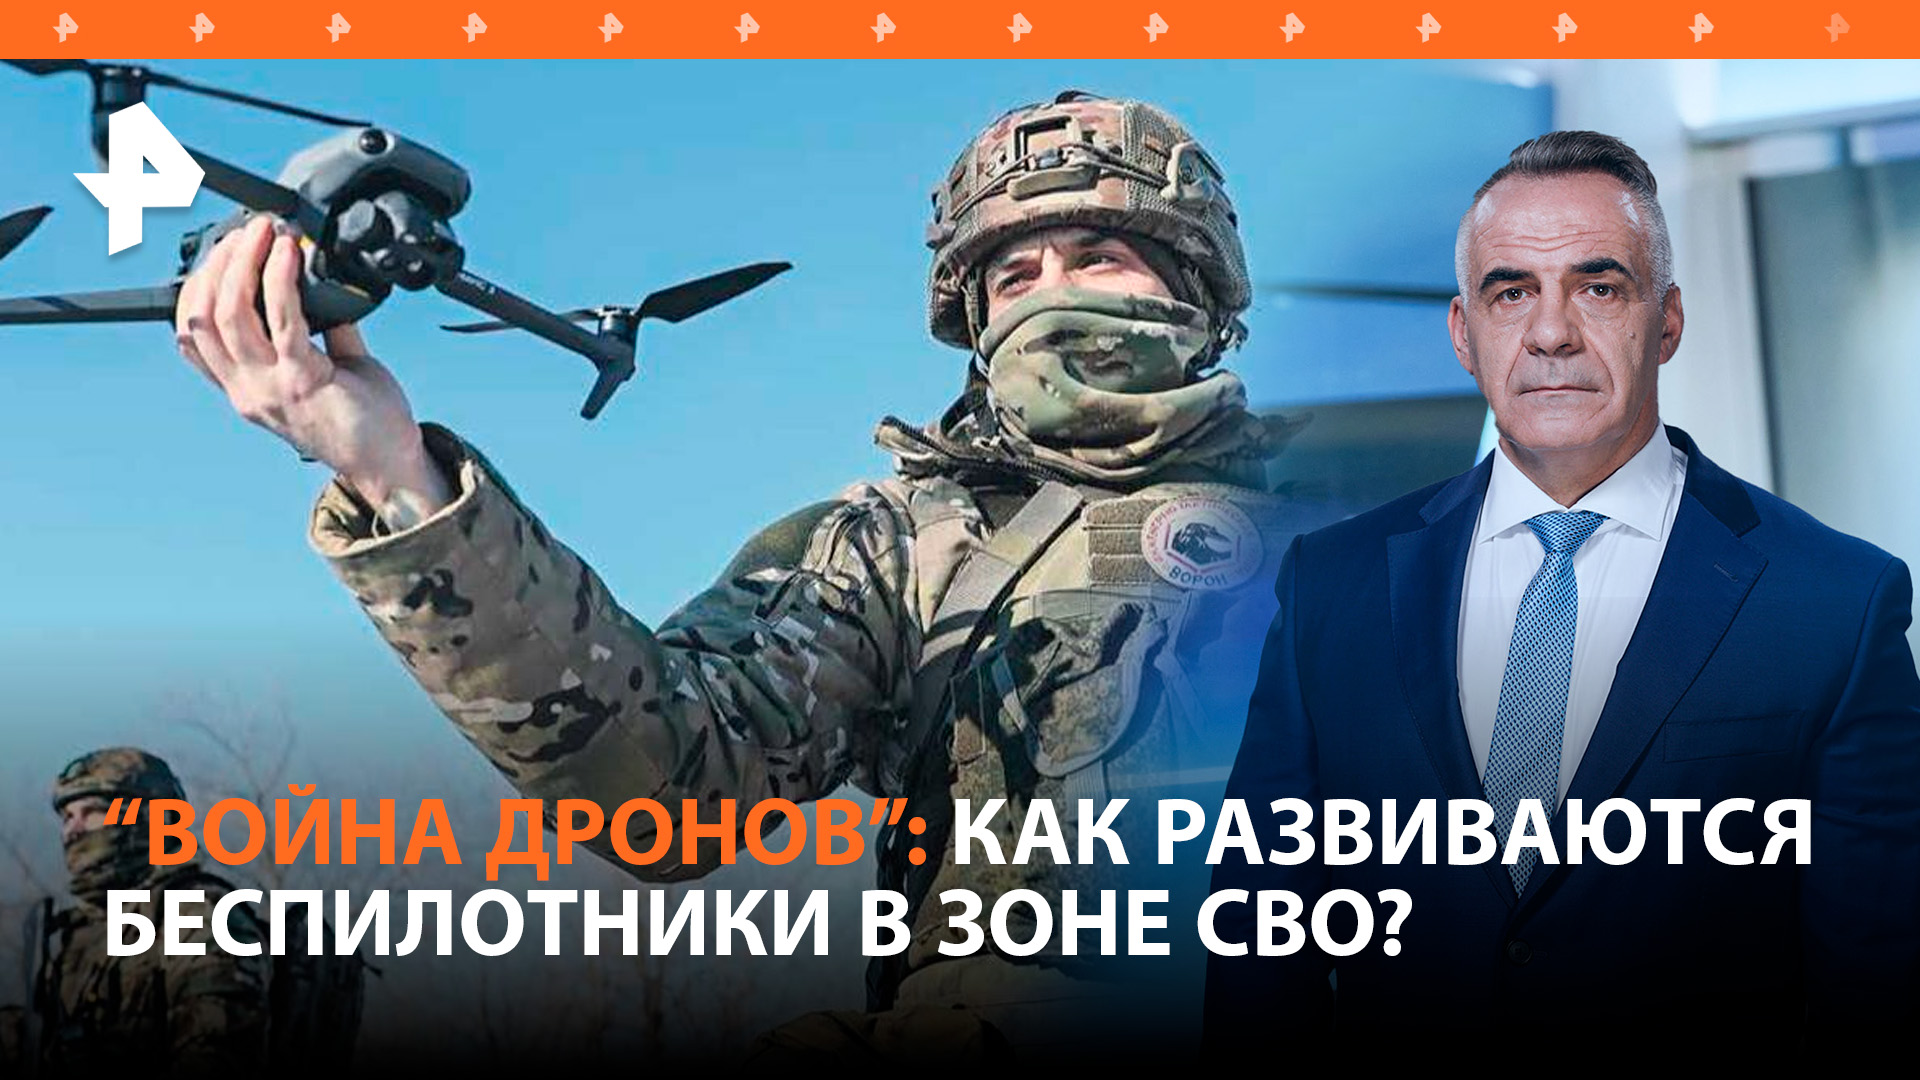 Война дронов: как российская ПВО круглосуточно противостоит украинским БПЛА / Итоги недели